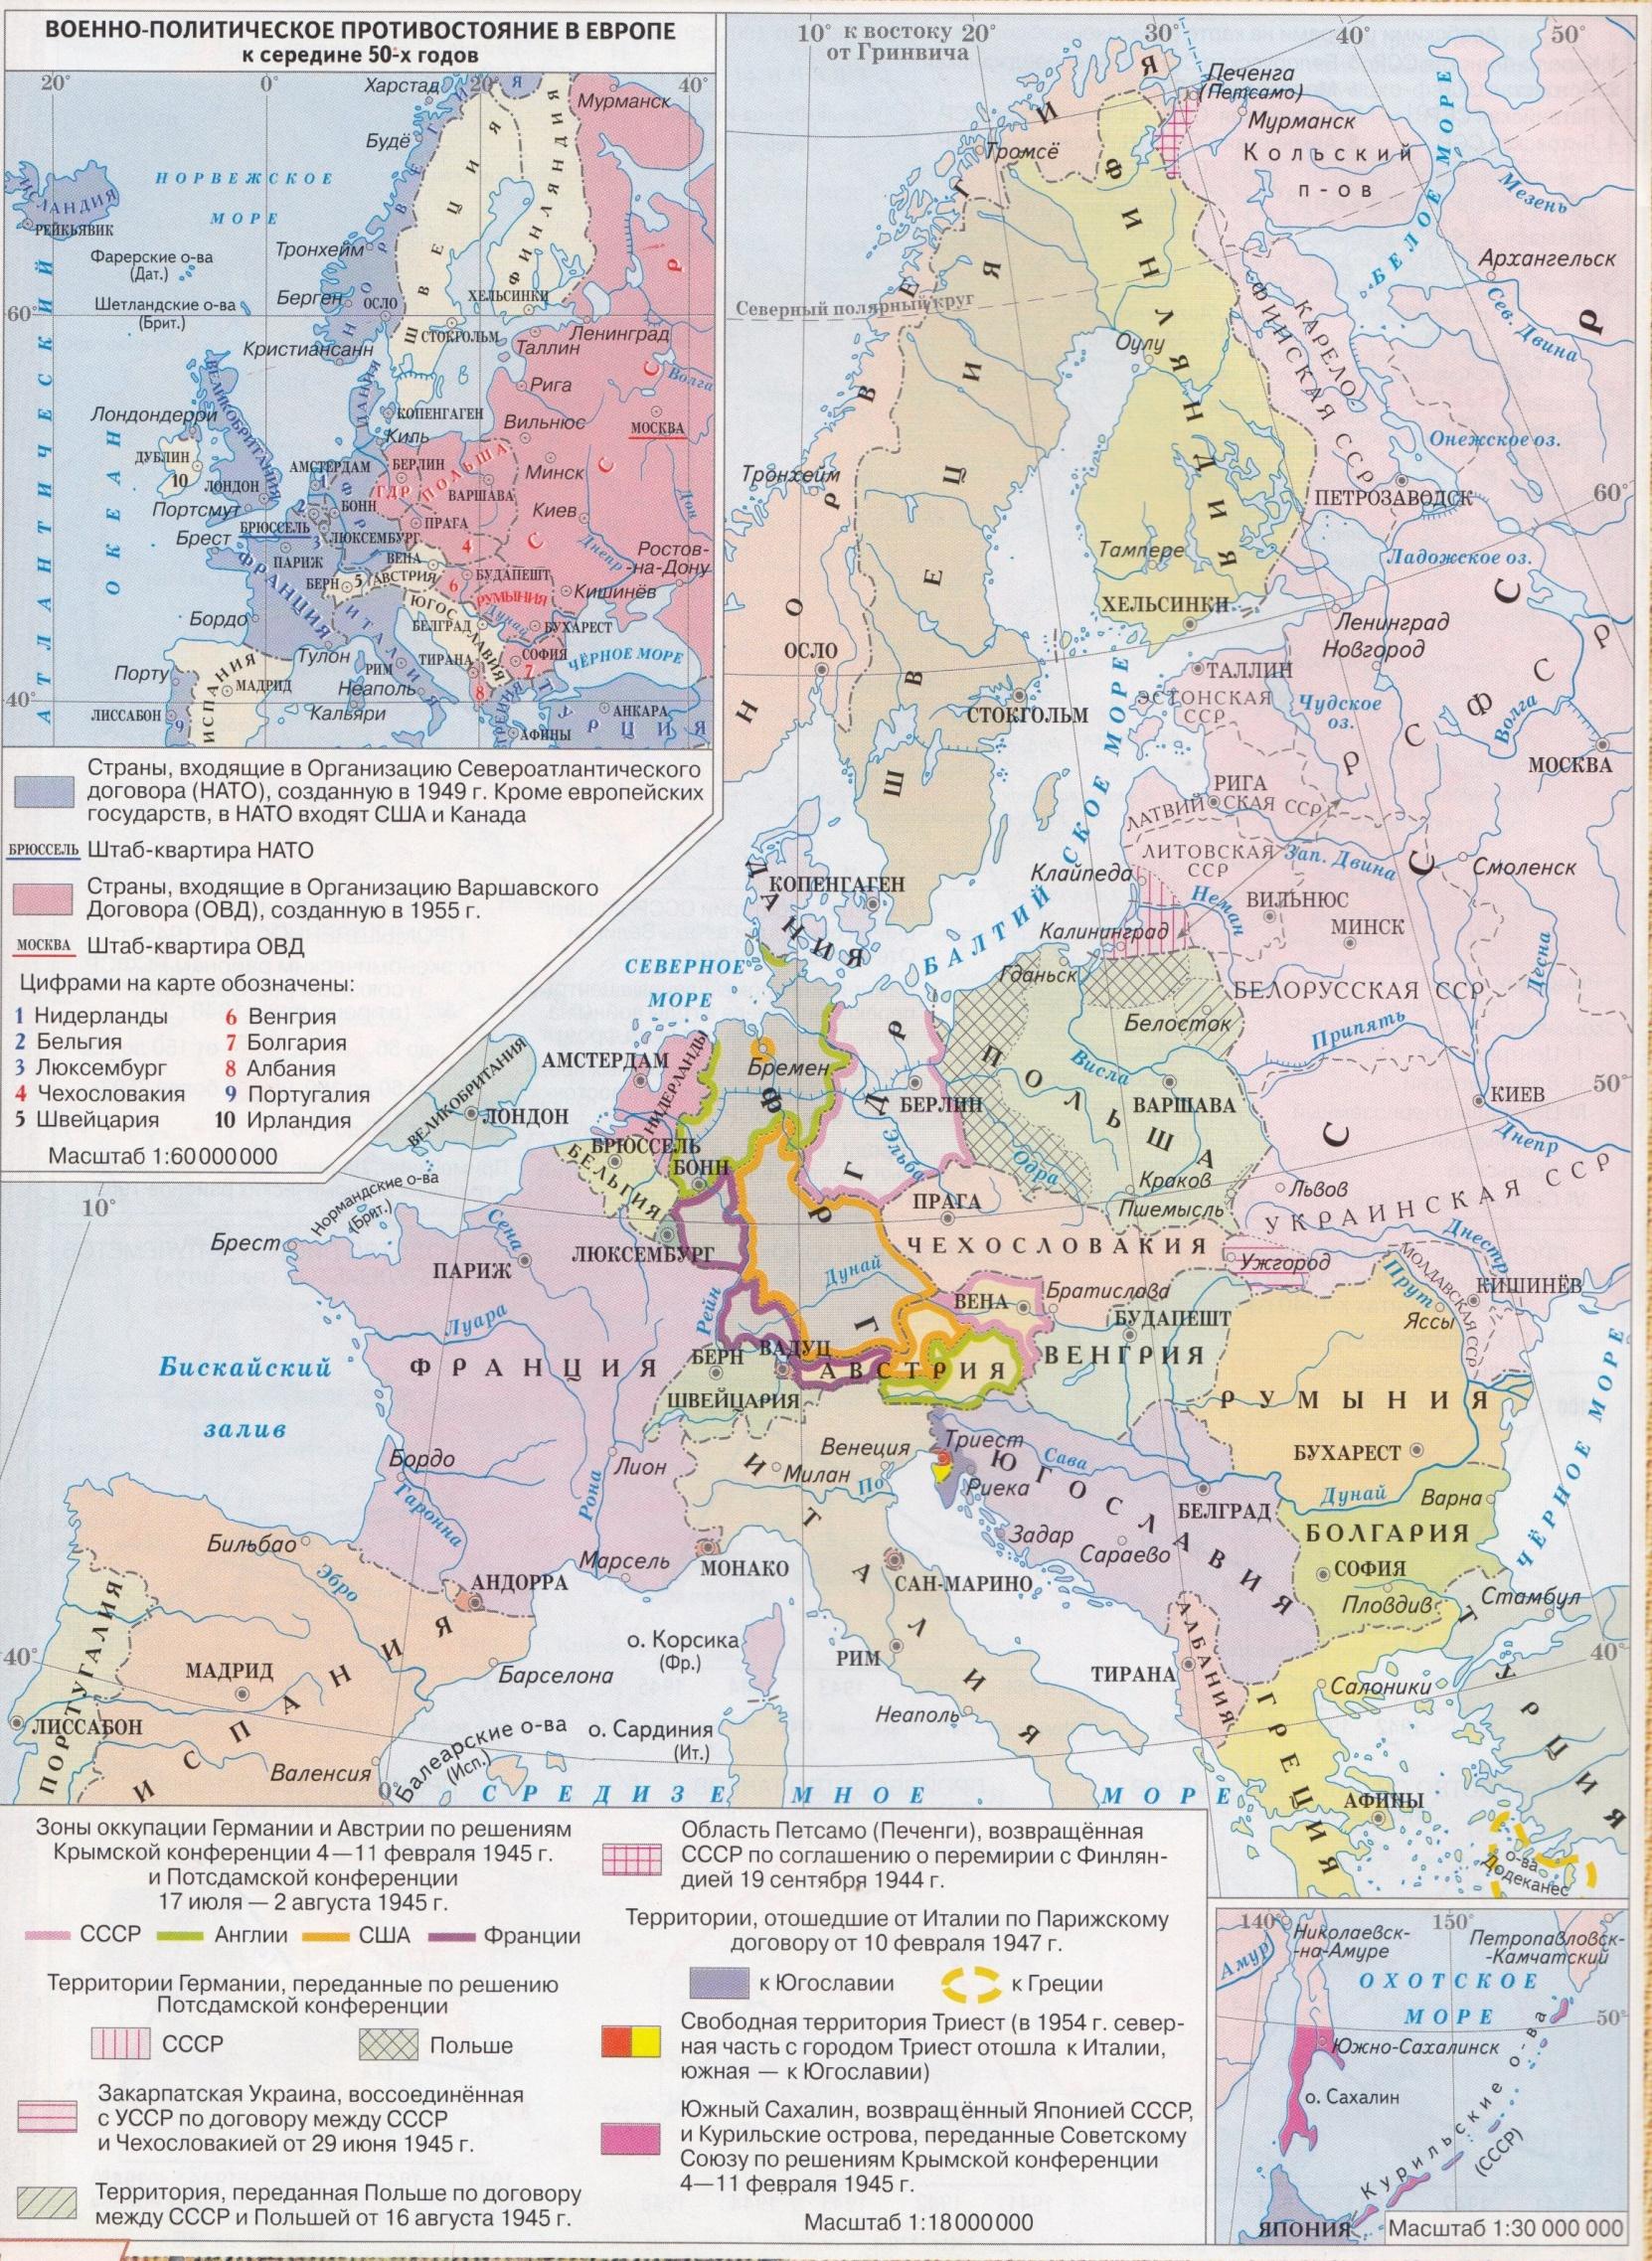 Контурная карта реформация в европе в 16 веке крестьянская война в германии